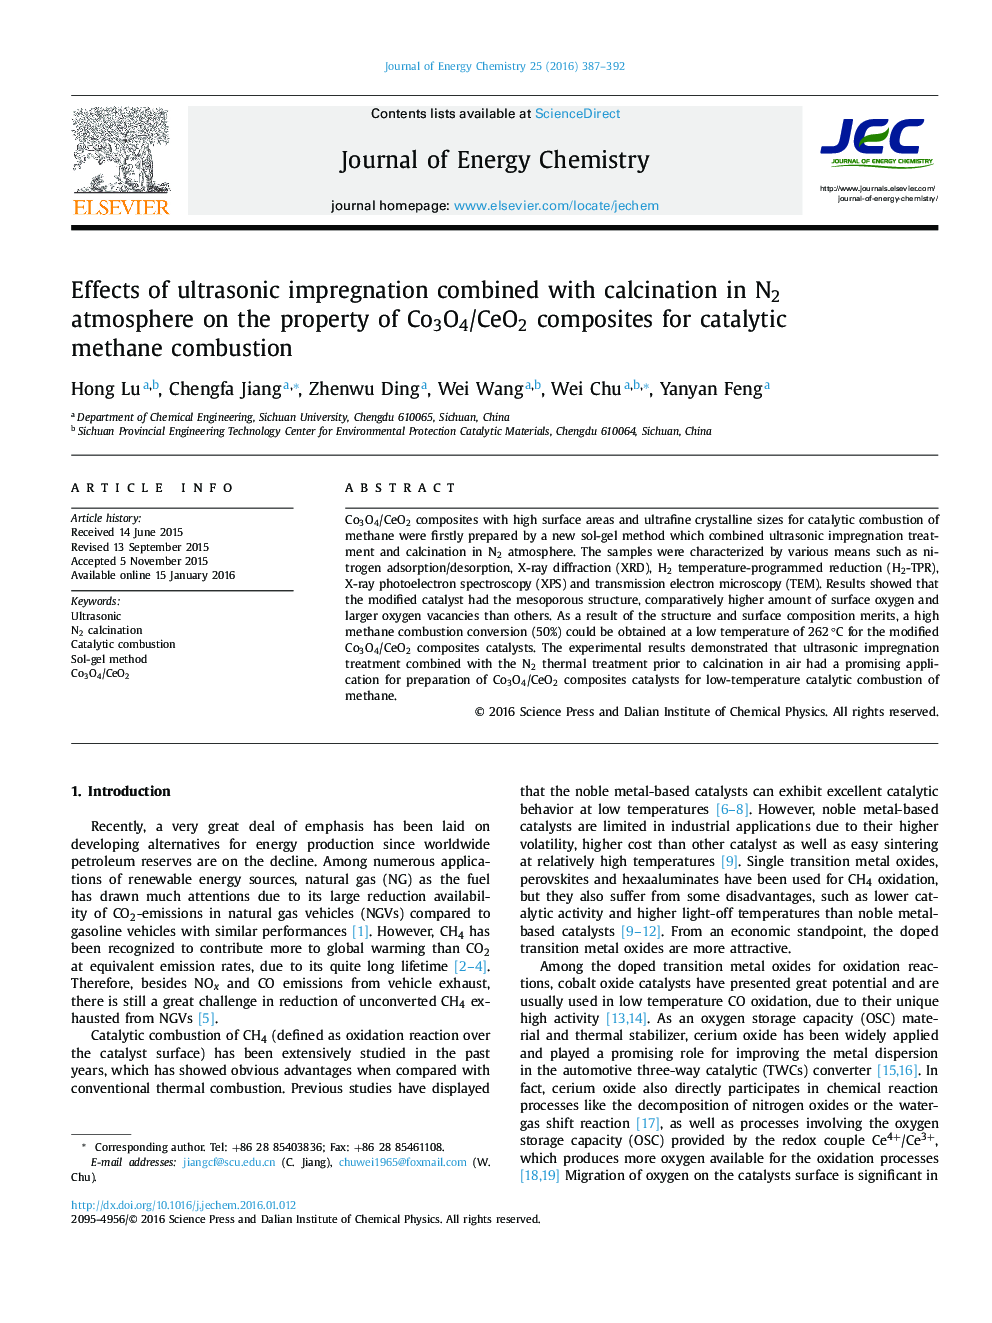 اثرات اشباع اولتراسونیک ترکیب شده با calcination در اتمسفر N2 بر ویژگی کامپوزیت های Co3O4/CeO2 برای احتراق متان کاتالیزوری